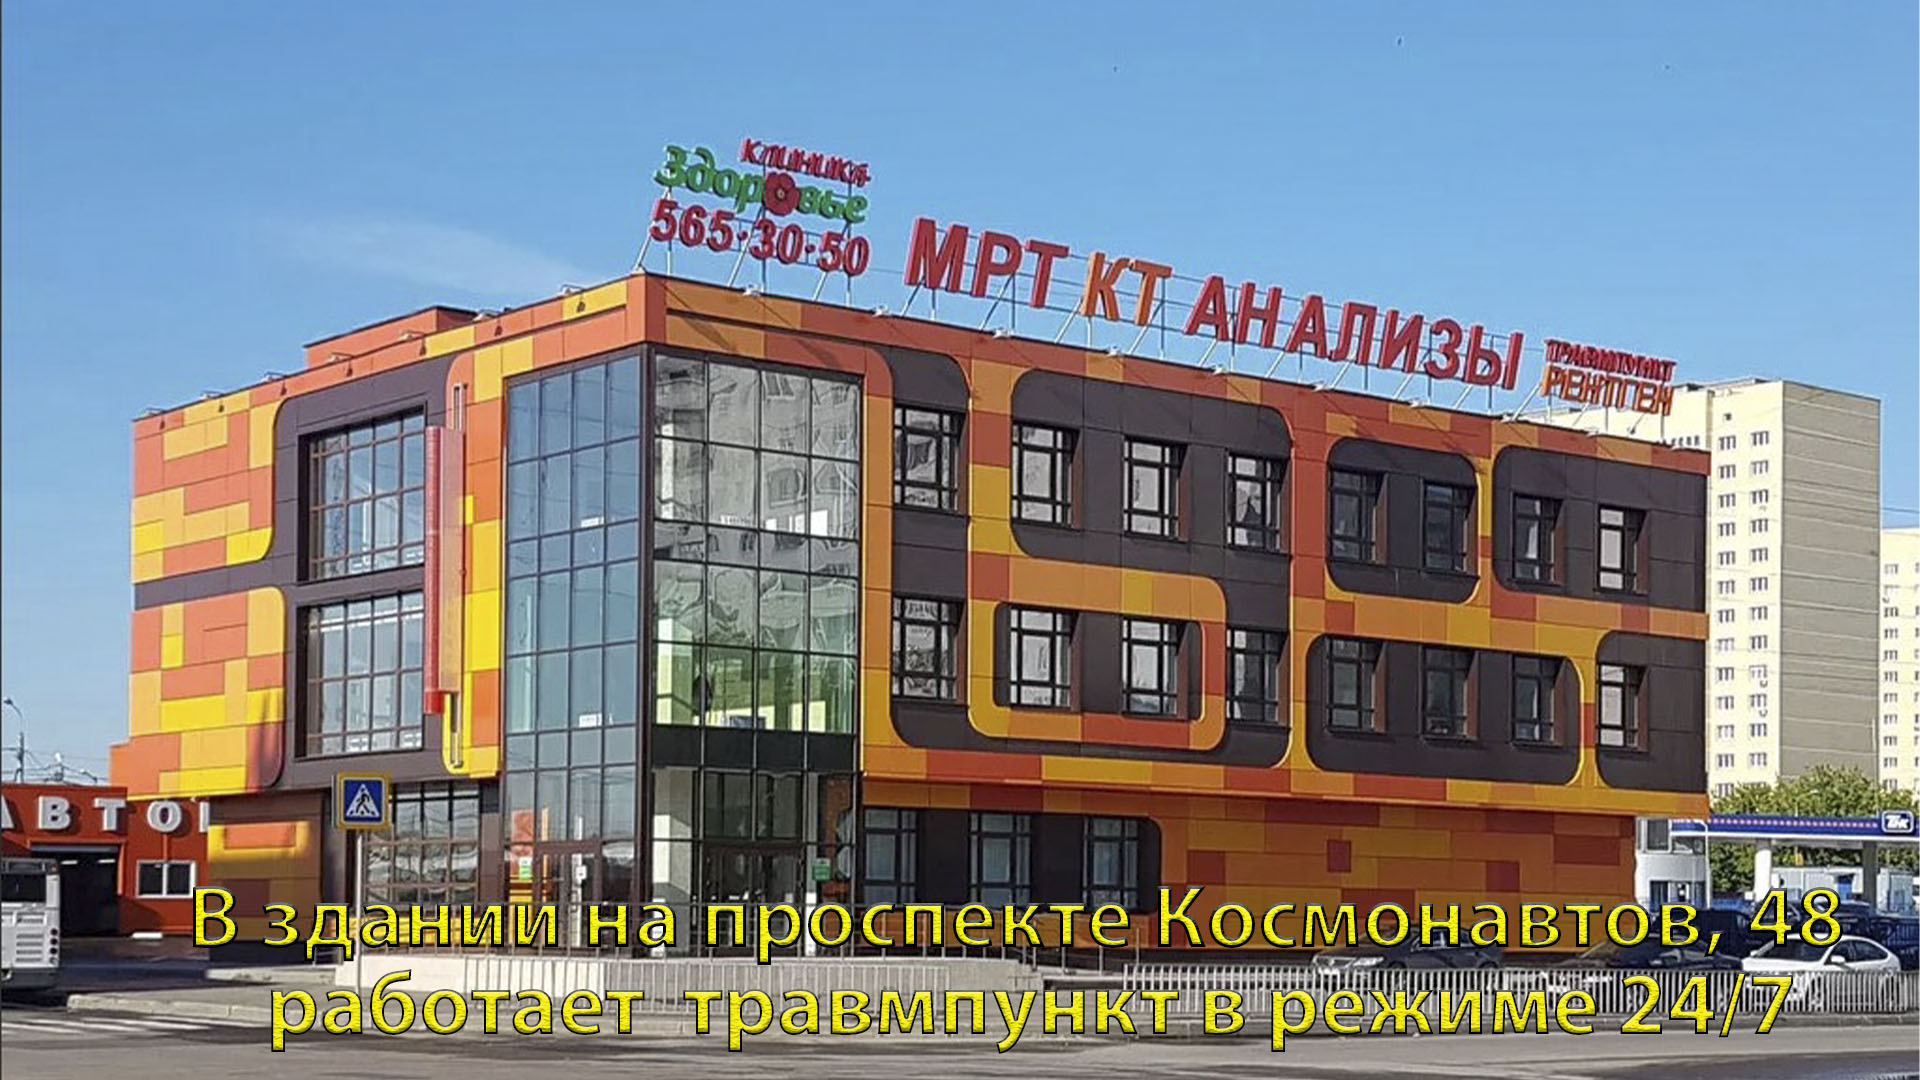 Здание клиники "Здоровье" на проспекте Космонавтов.